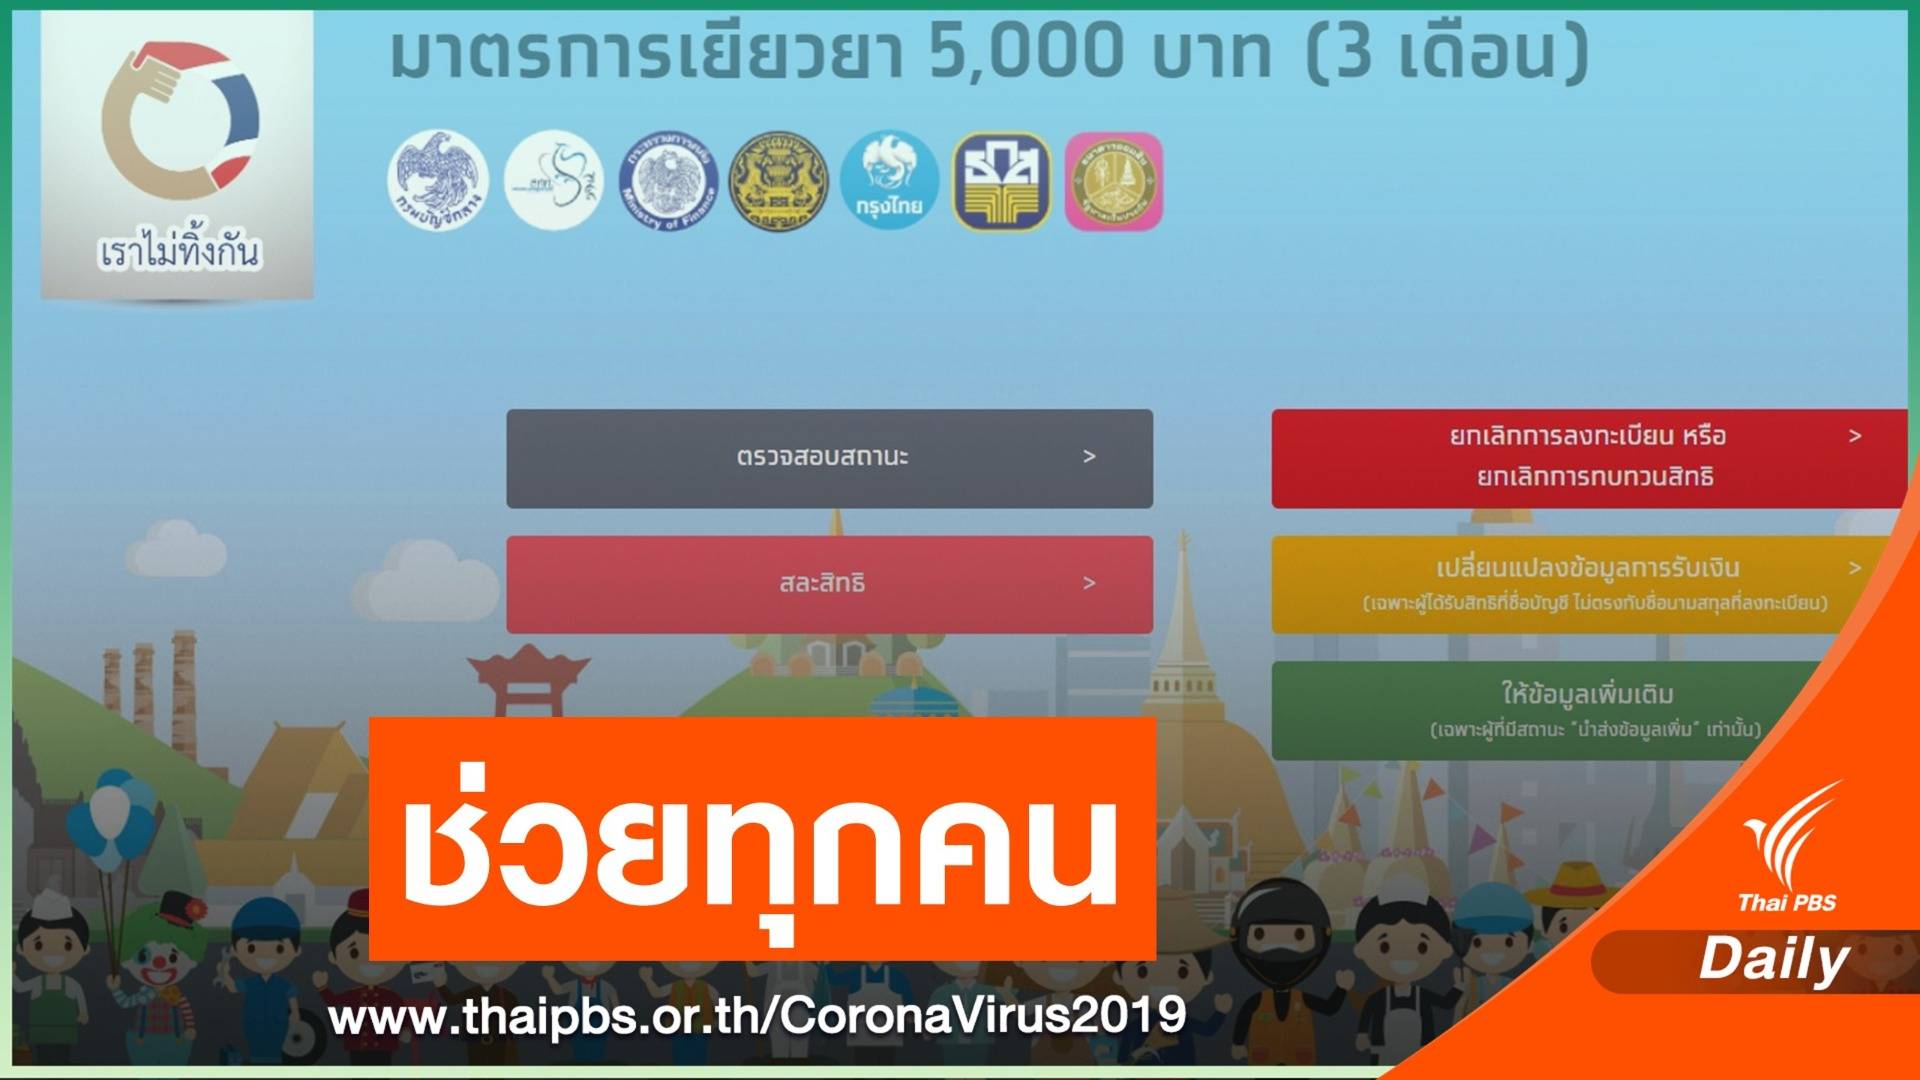 คลังเชื่อรัฐบาลช่วยคนไทยทุกคนจากผลกระทบ COVID-19 แล้ว 